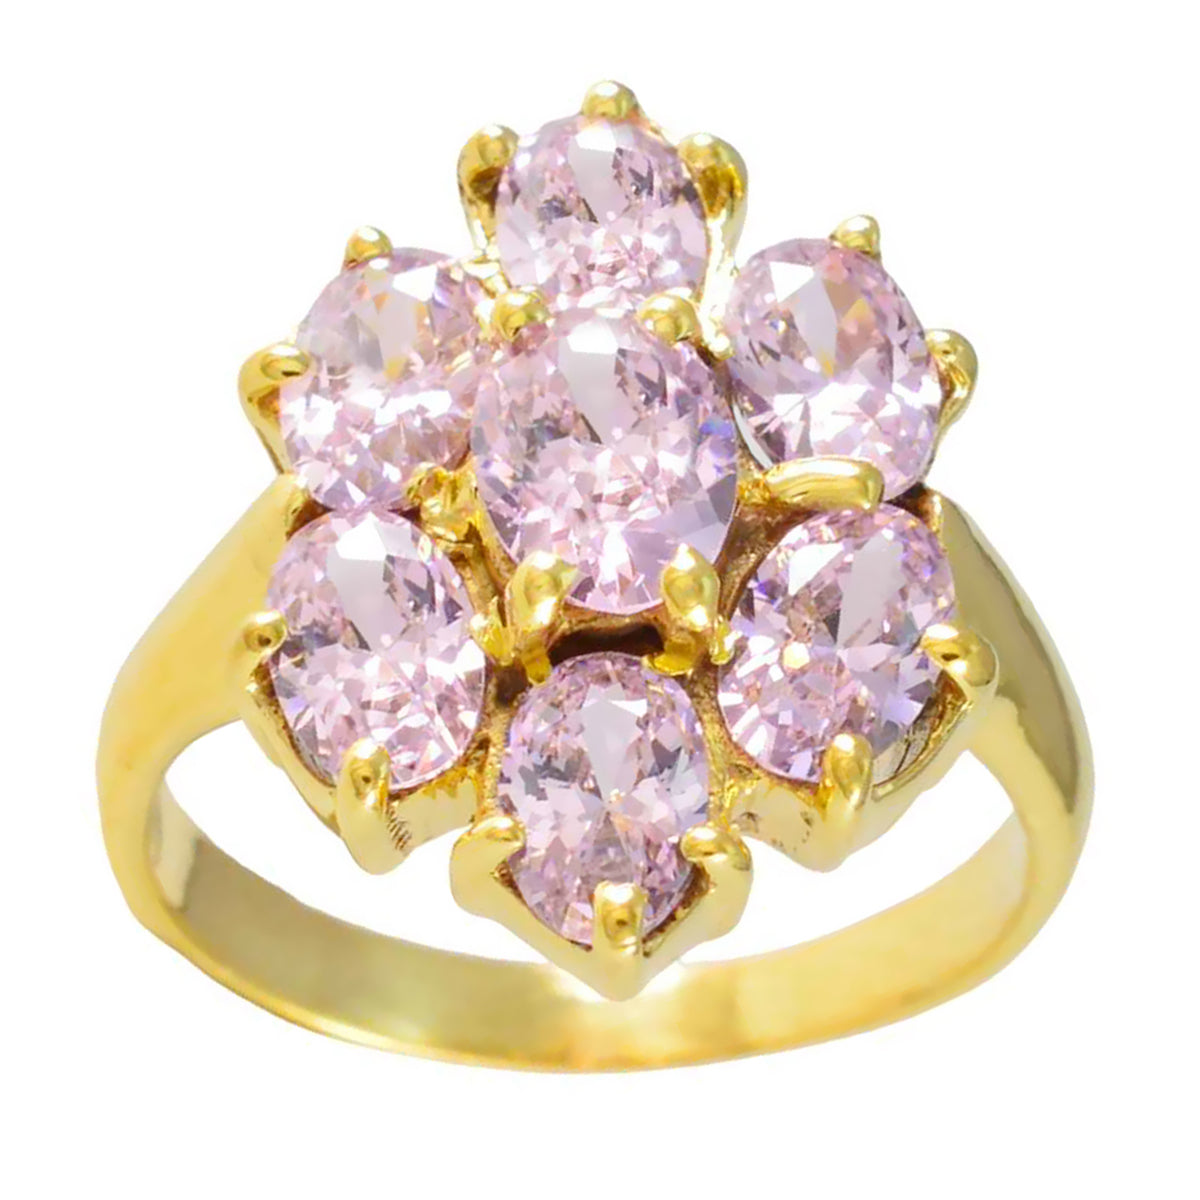 riyo kvantitativ silverring med gul guldplätering rosa cz sten oval form stiftinställning brudsmycken svart fredag ring